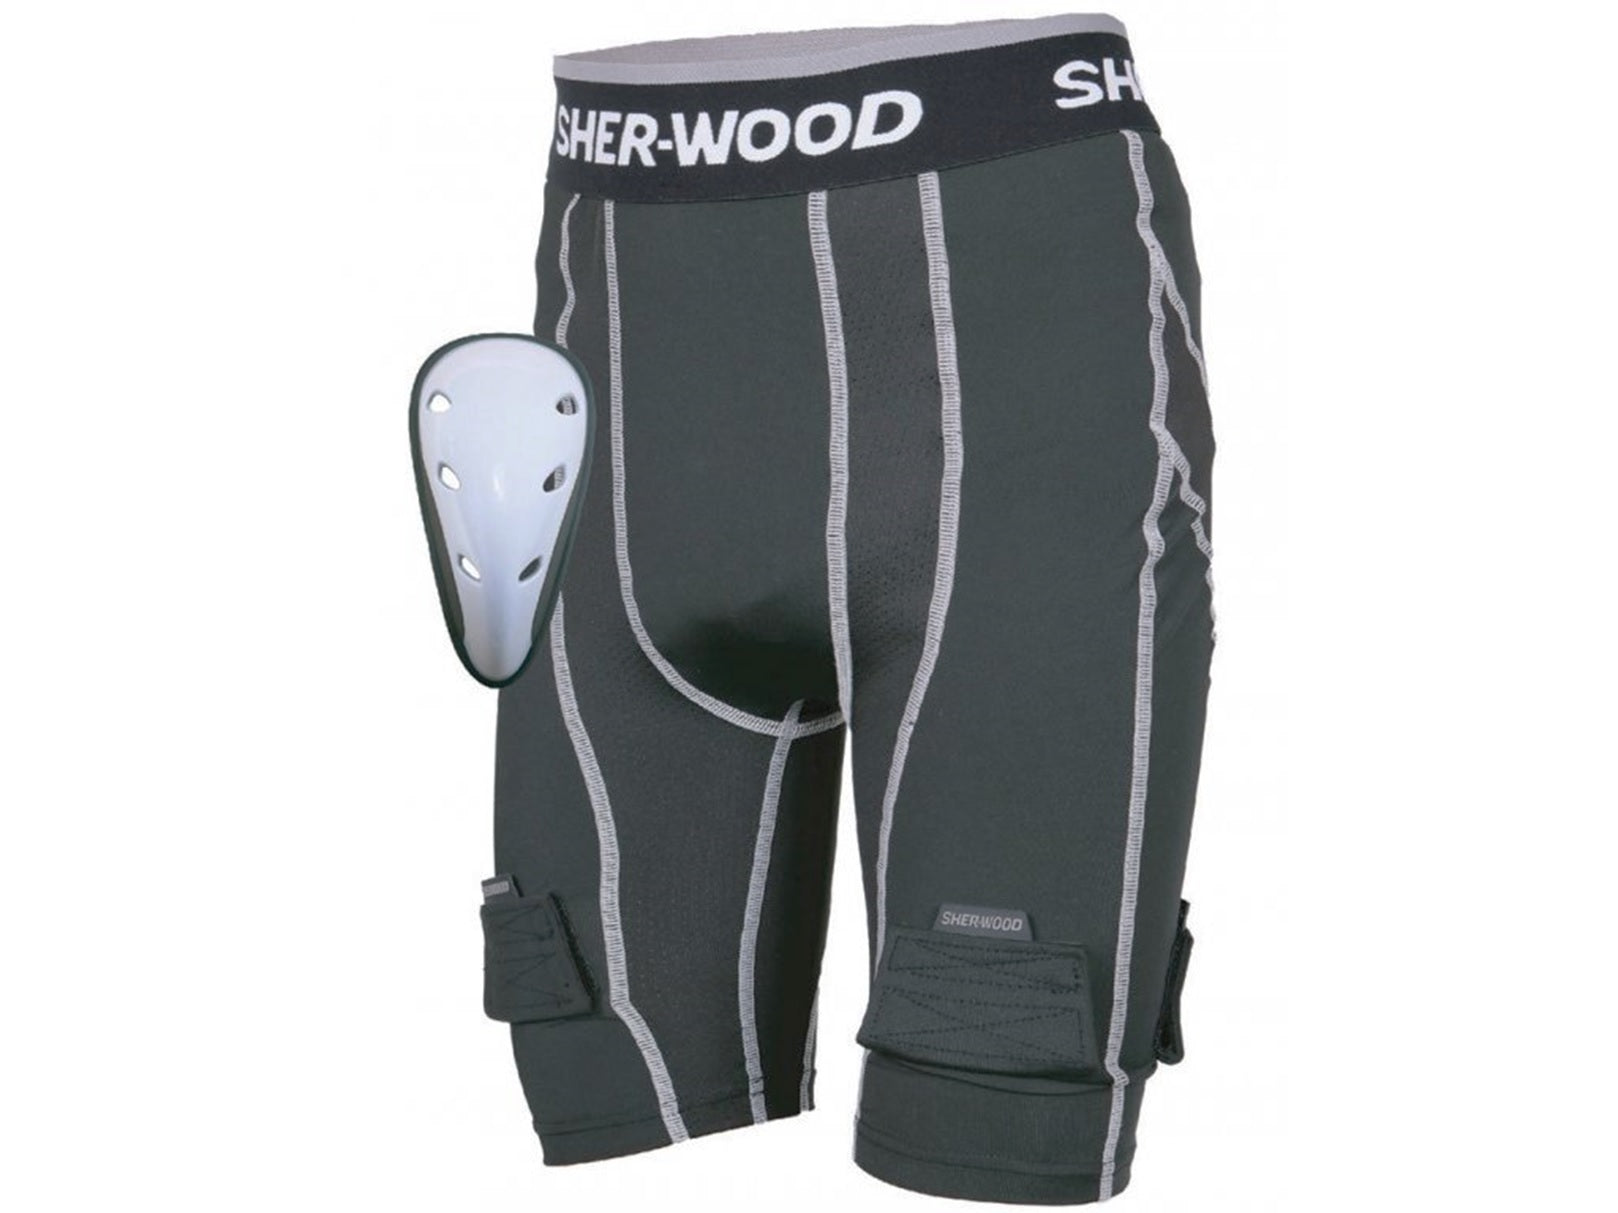 Sher-wood Compression Jock Short Junior Tiefschutz Eishockey S-XL